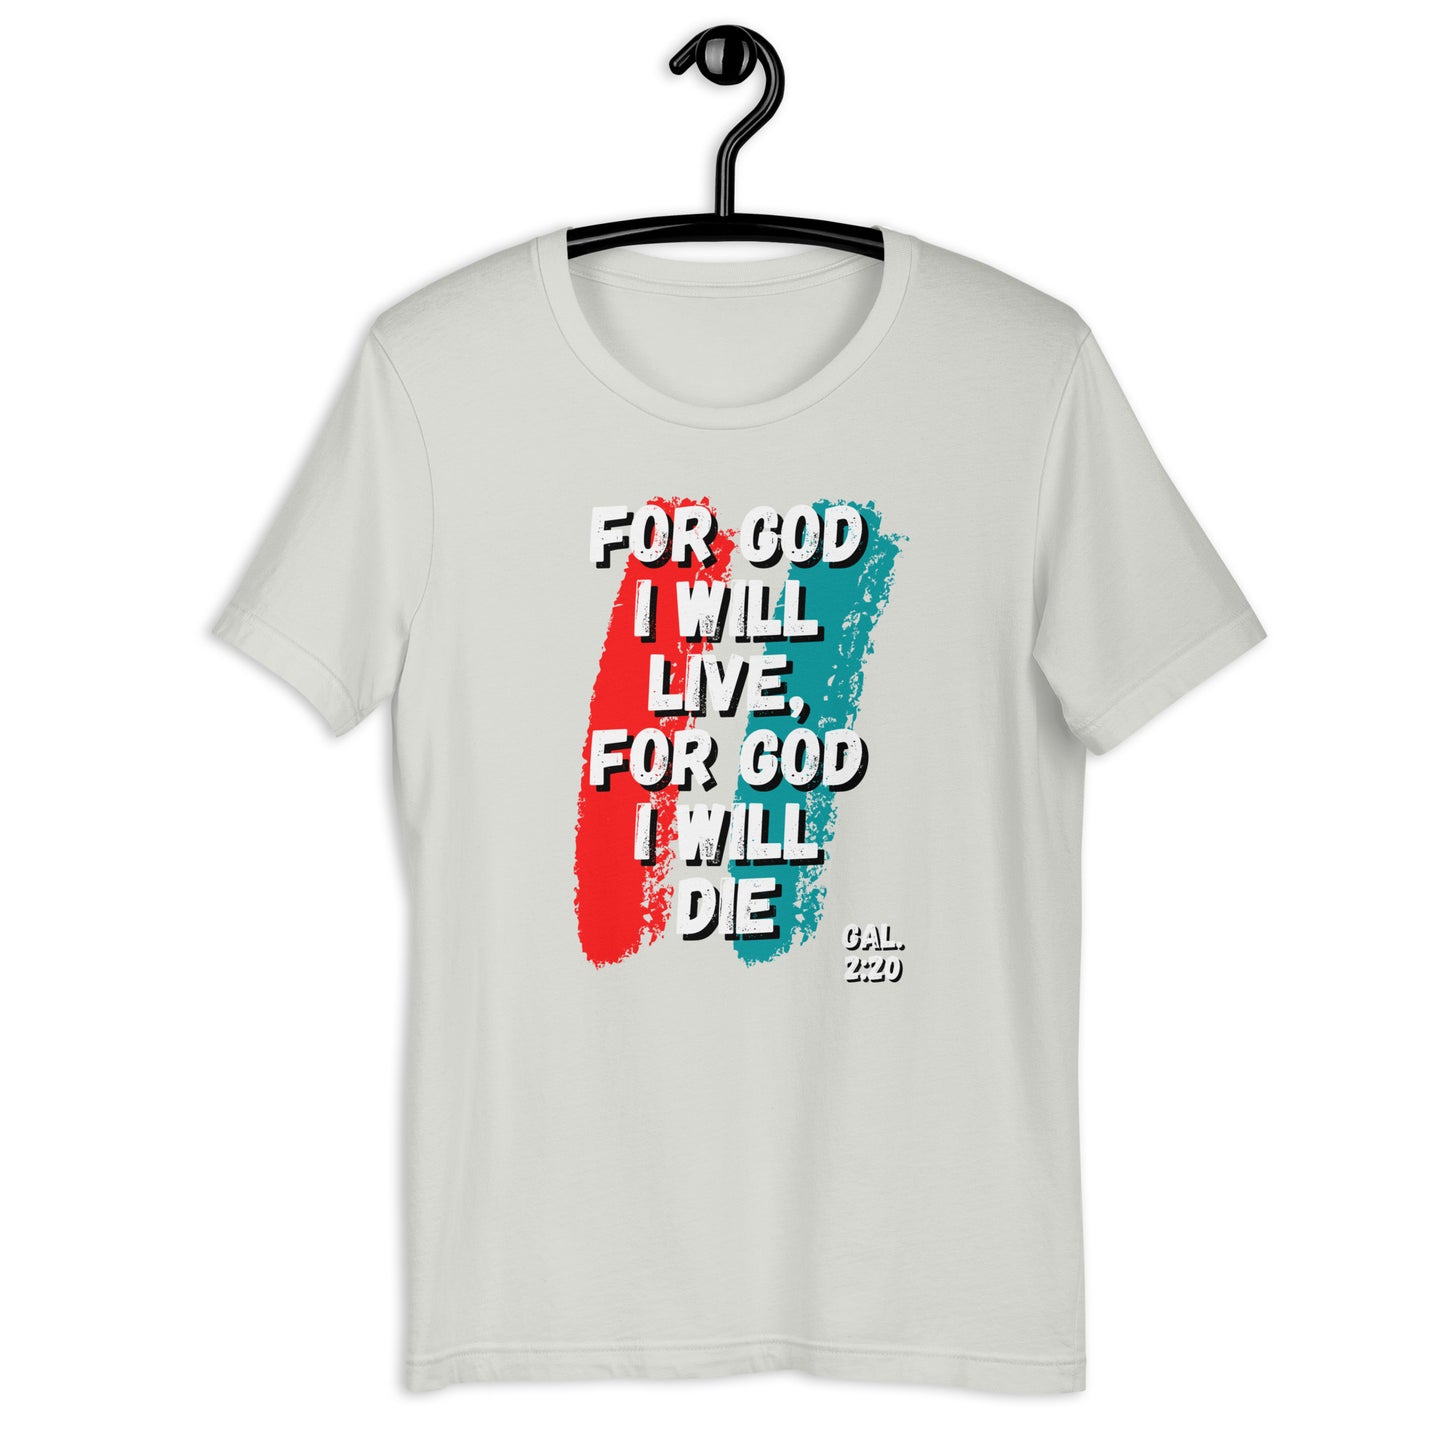 For God I Will Live, For God I Will Die (stripe) t-shirt